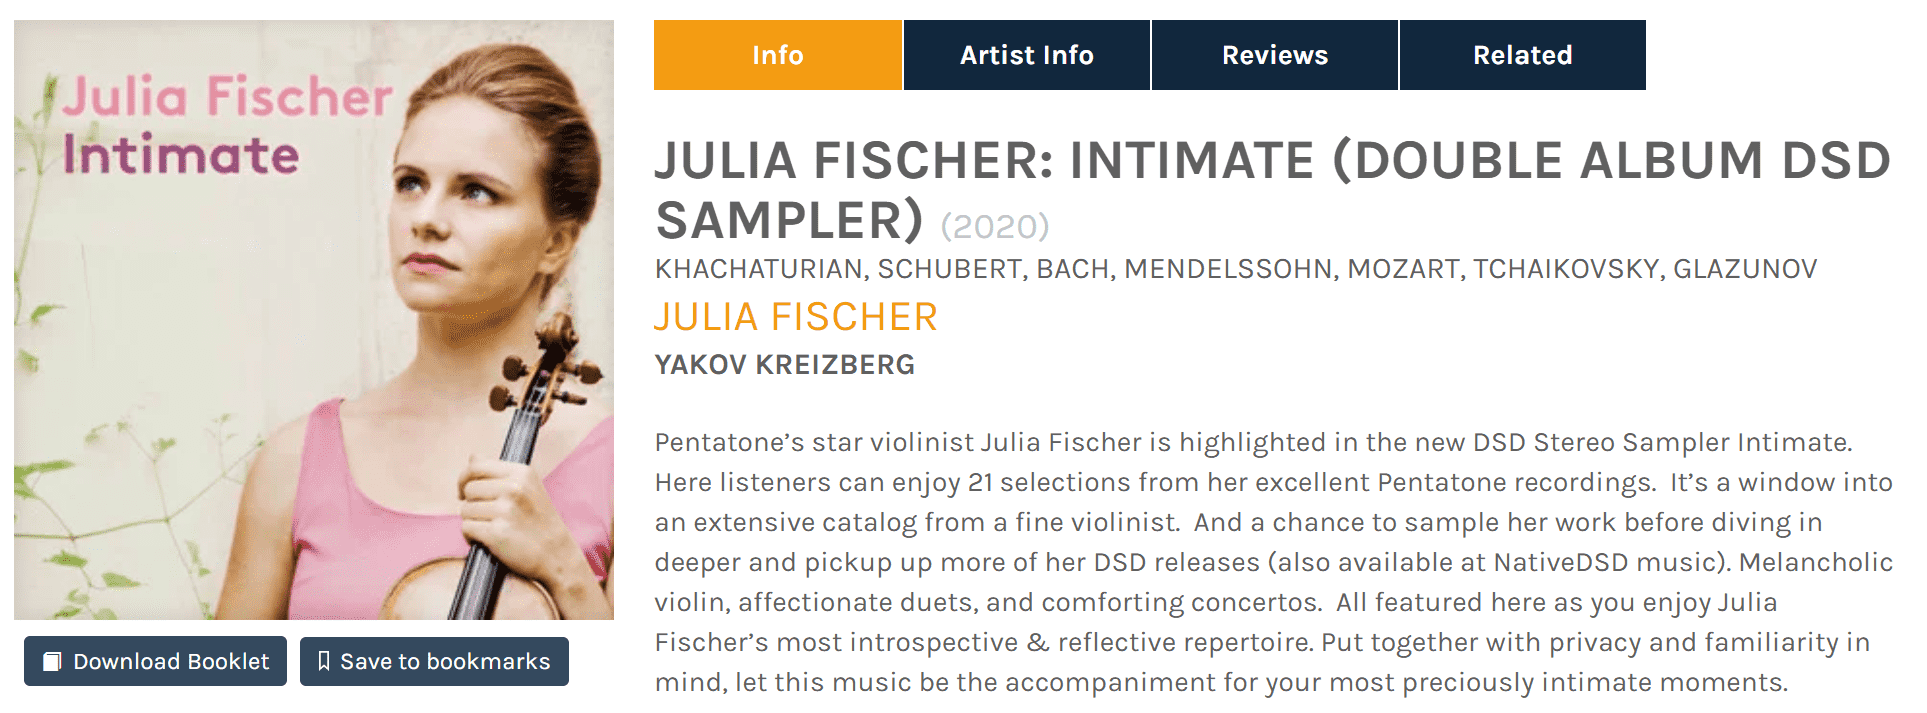 JULIA FISCHER INTIMATE (DOUBLE ALBUM DSD SAMPLER)